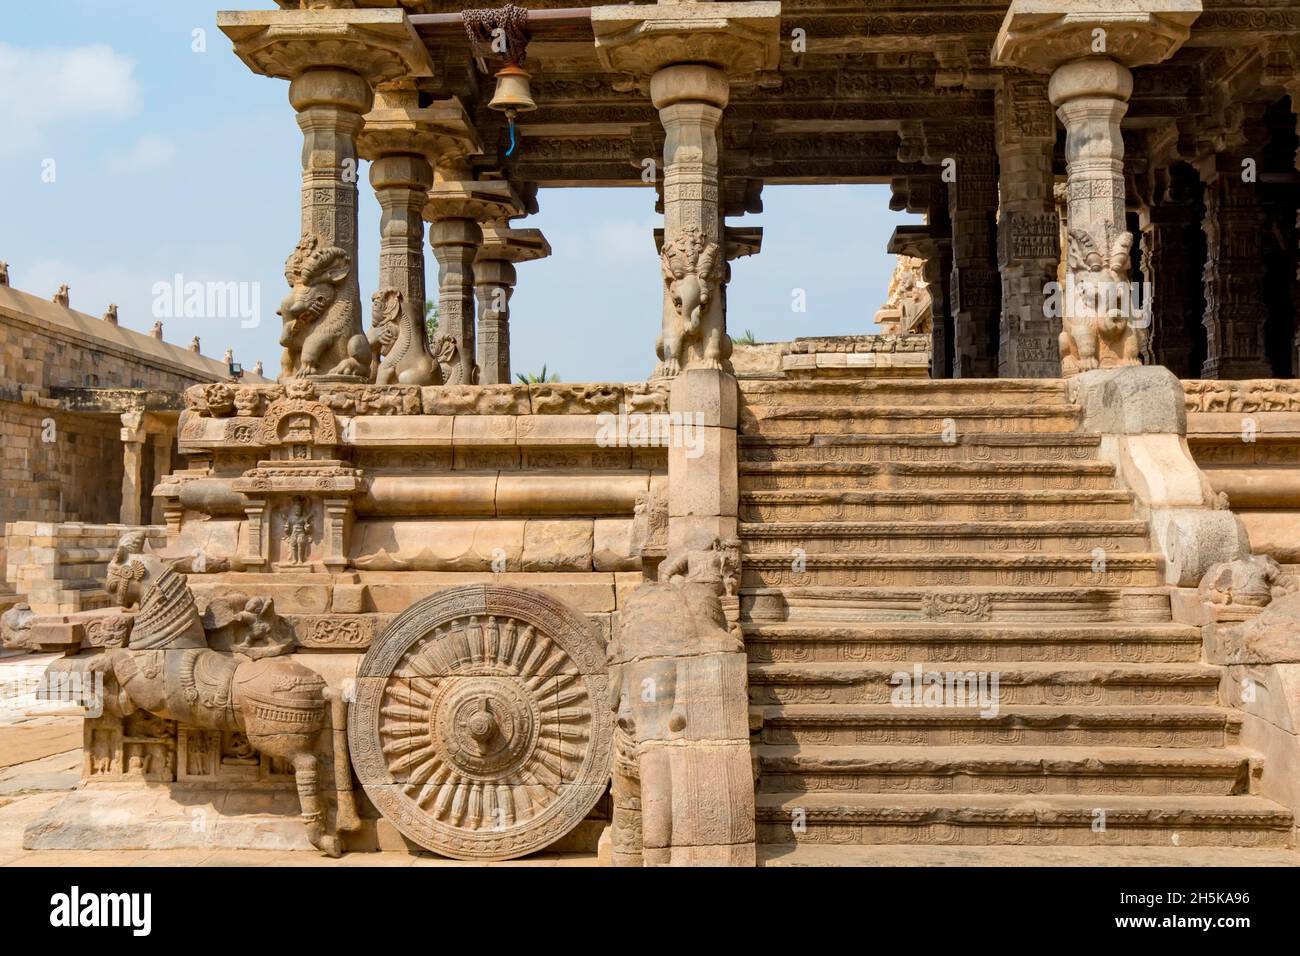 Carro trainato da cavalli scolpito in pietra all'esterno del Tempio di Airavatesvara di Dravidian Chola era con scale che conducono all'interno; Darasuram, Tamil Nadu, India Foto Stock